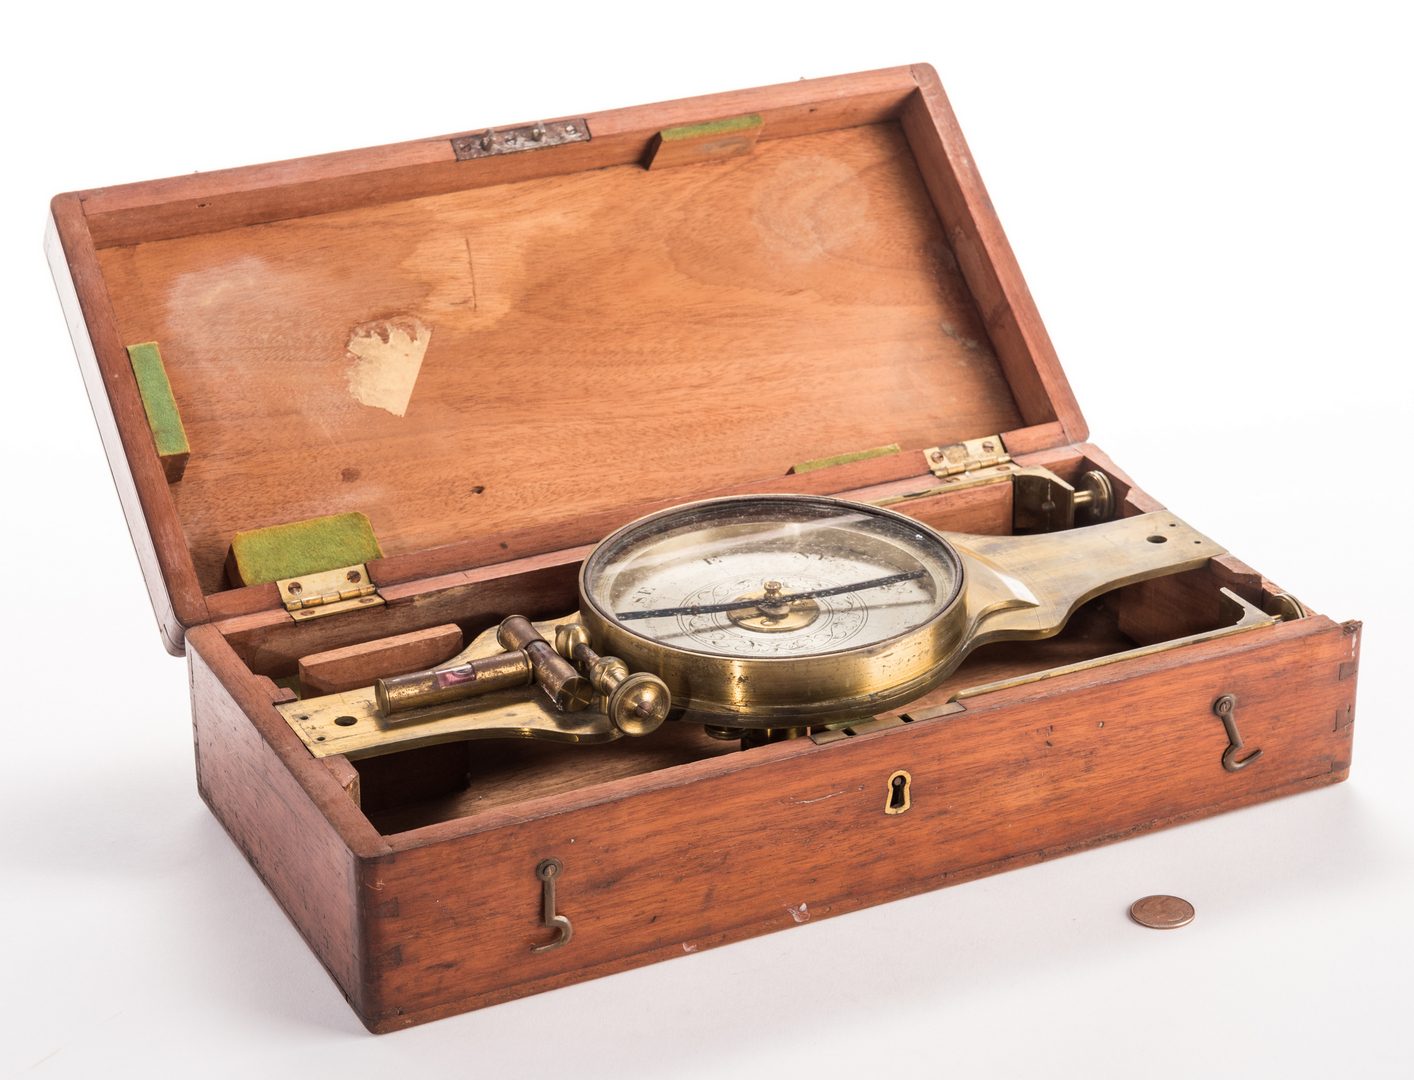 Lot 709: 19th Cent. Brass Surveyor's Compass, Benjamin Pike